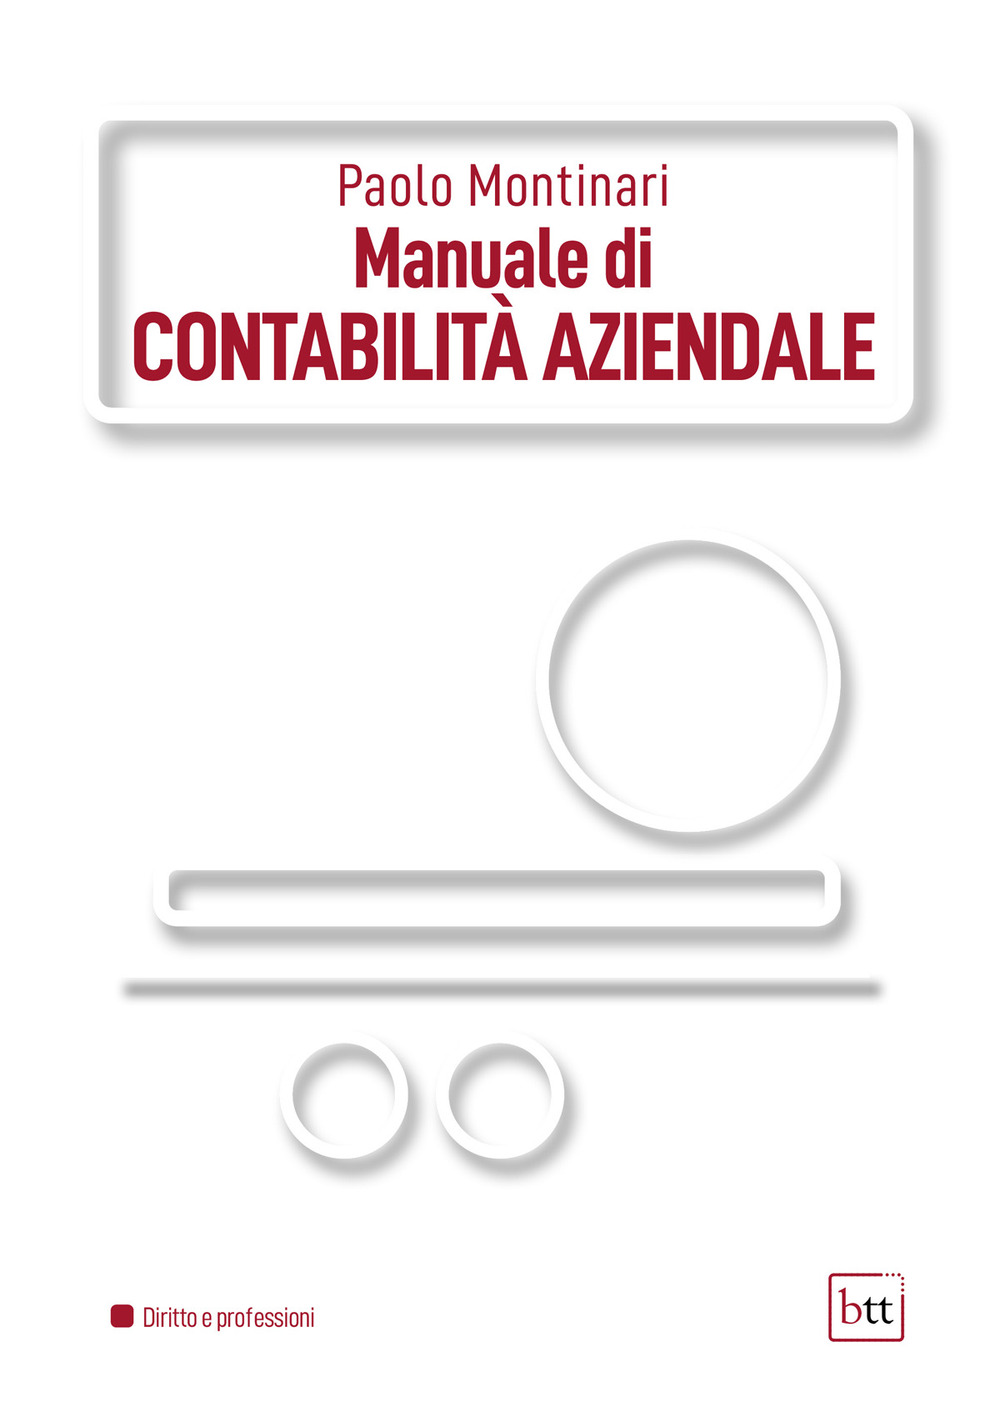 Libri Paolo Montinari - Manuale Di Contabilita Aziendale NUOVO SIGILLATO, EDIZIONE DEL 24/06/2022 SUBITO DISPONIBILE